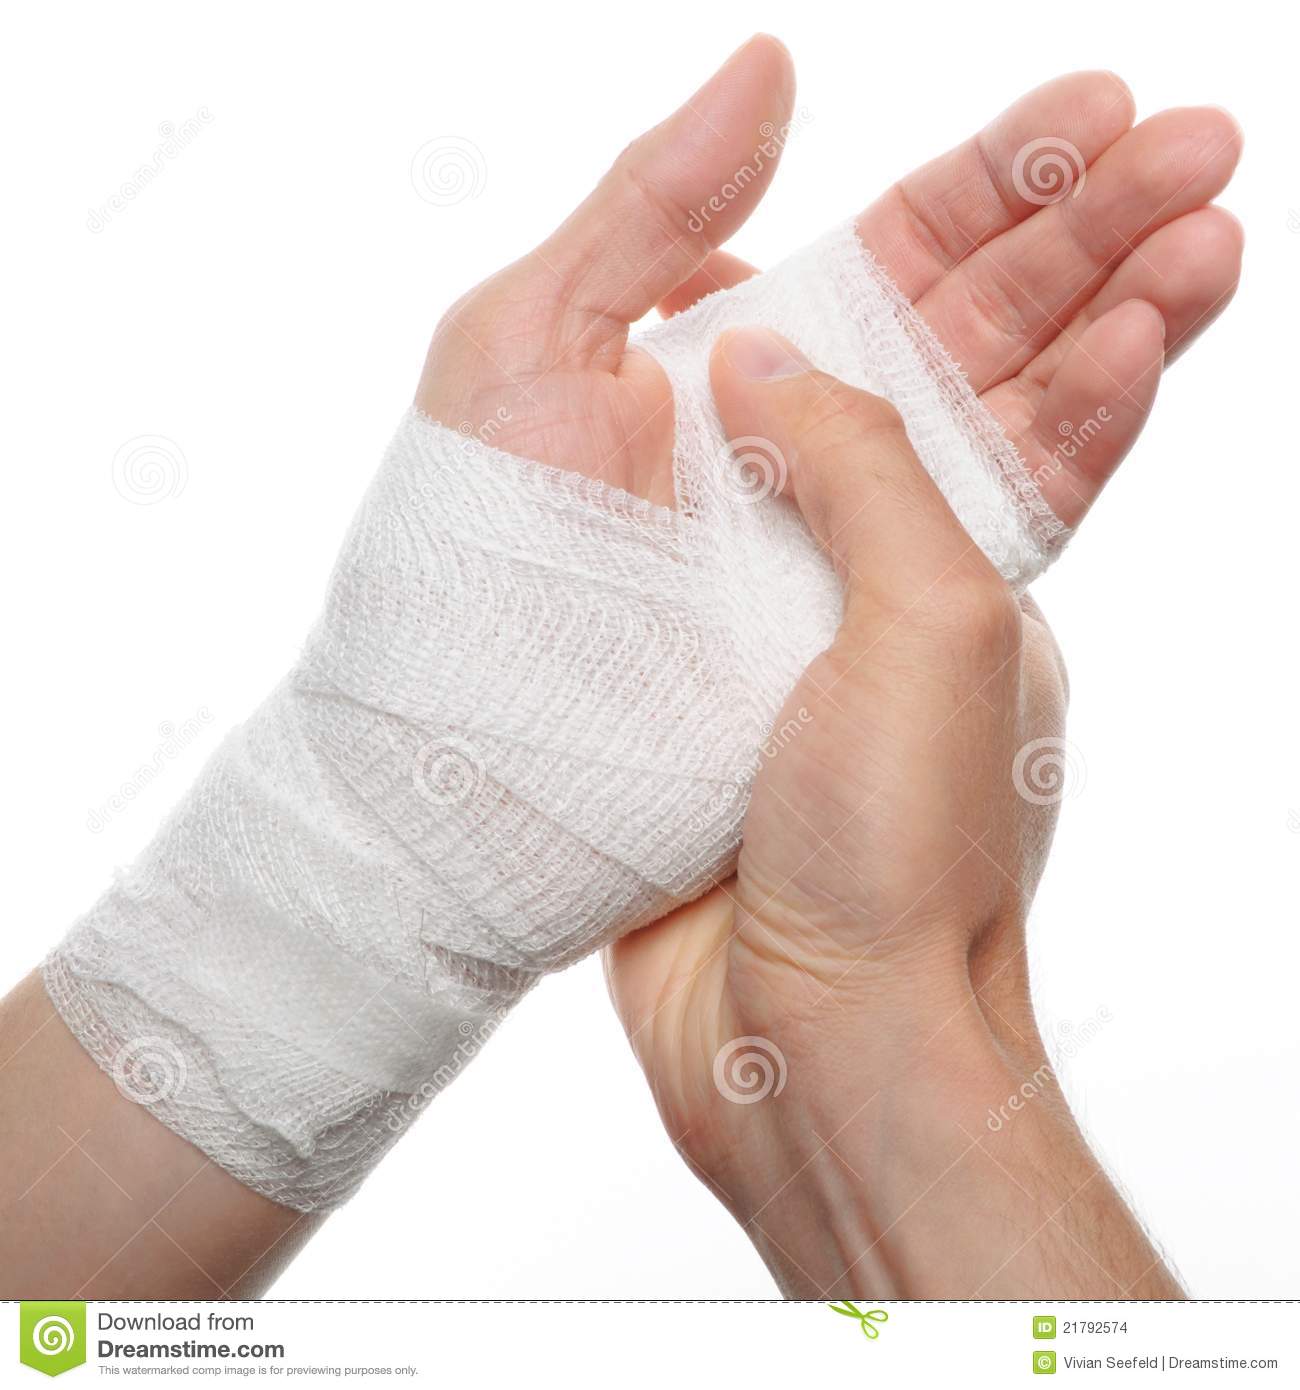 White Medicine Bandage On Injury Hand On White Background